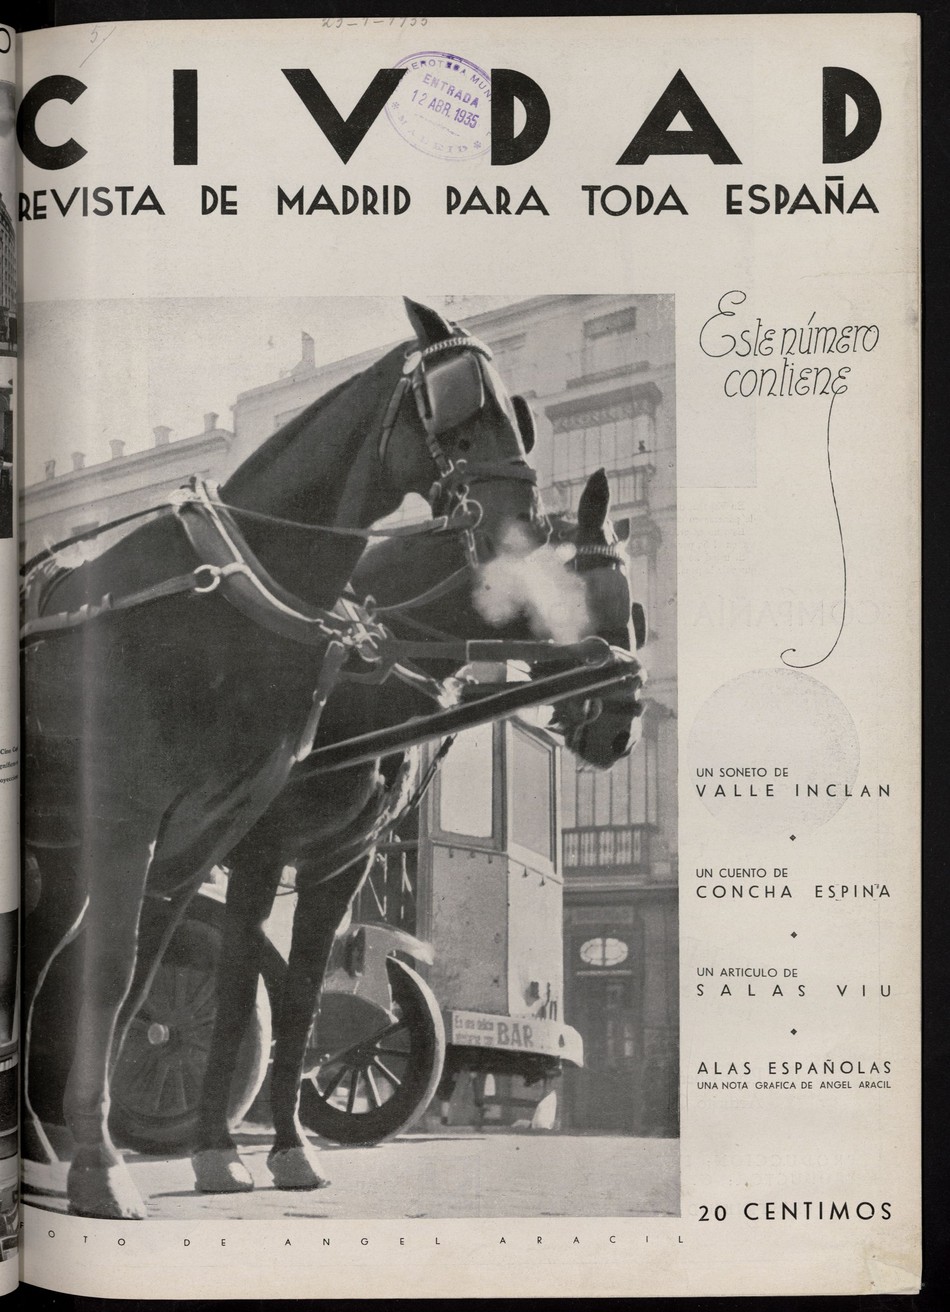 Ciudad: revista de Madrid para toda España del 23 de enero de 1935